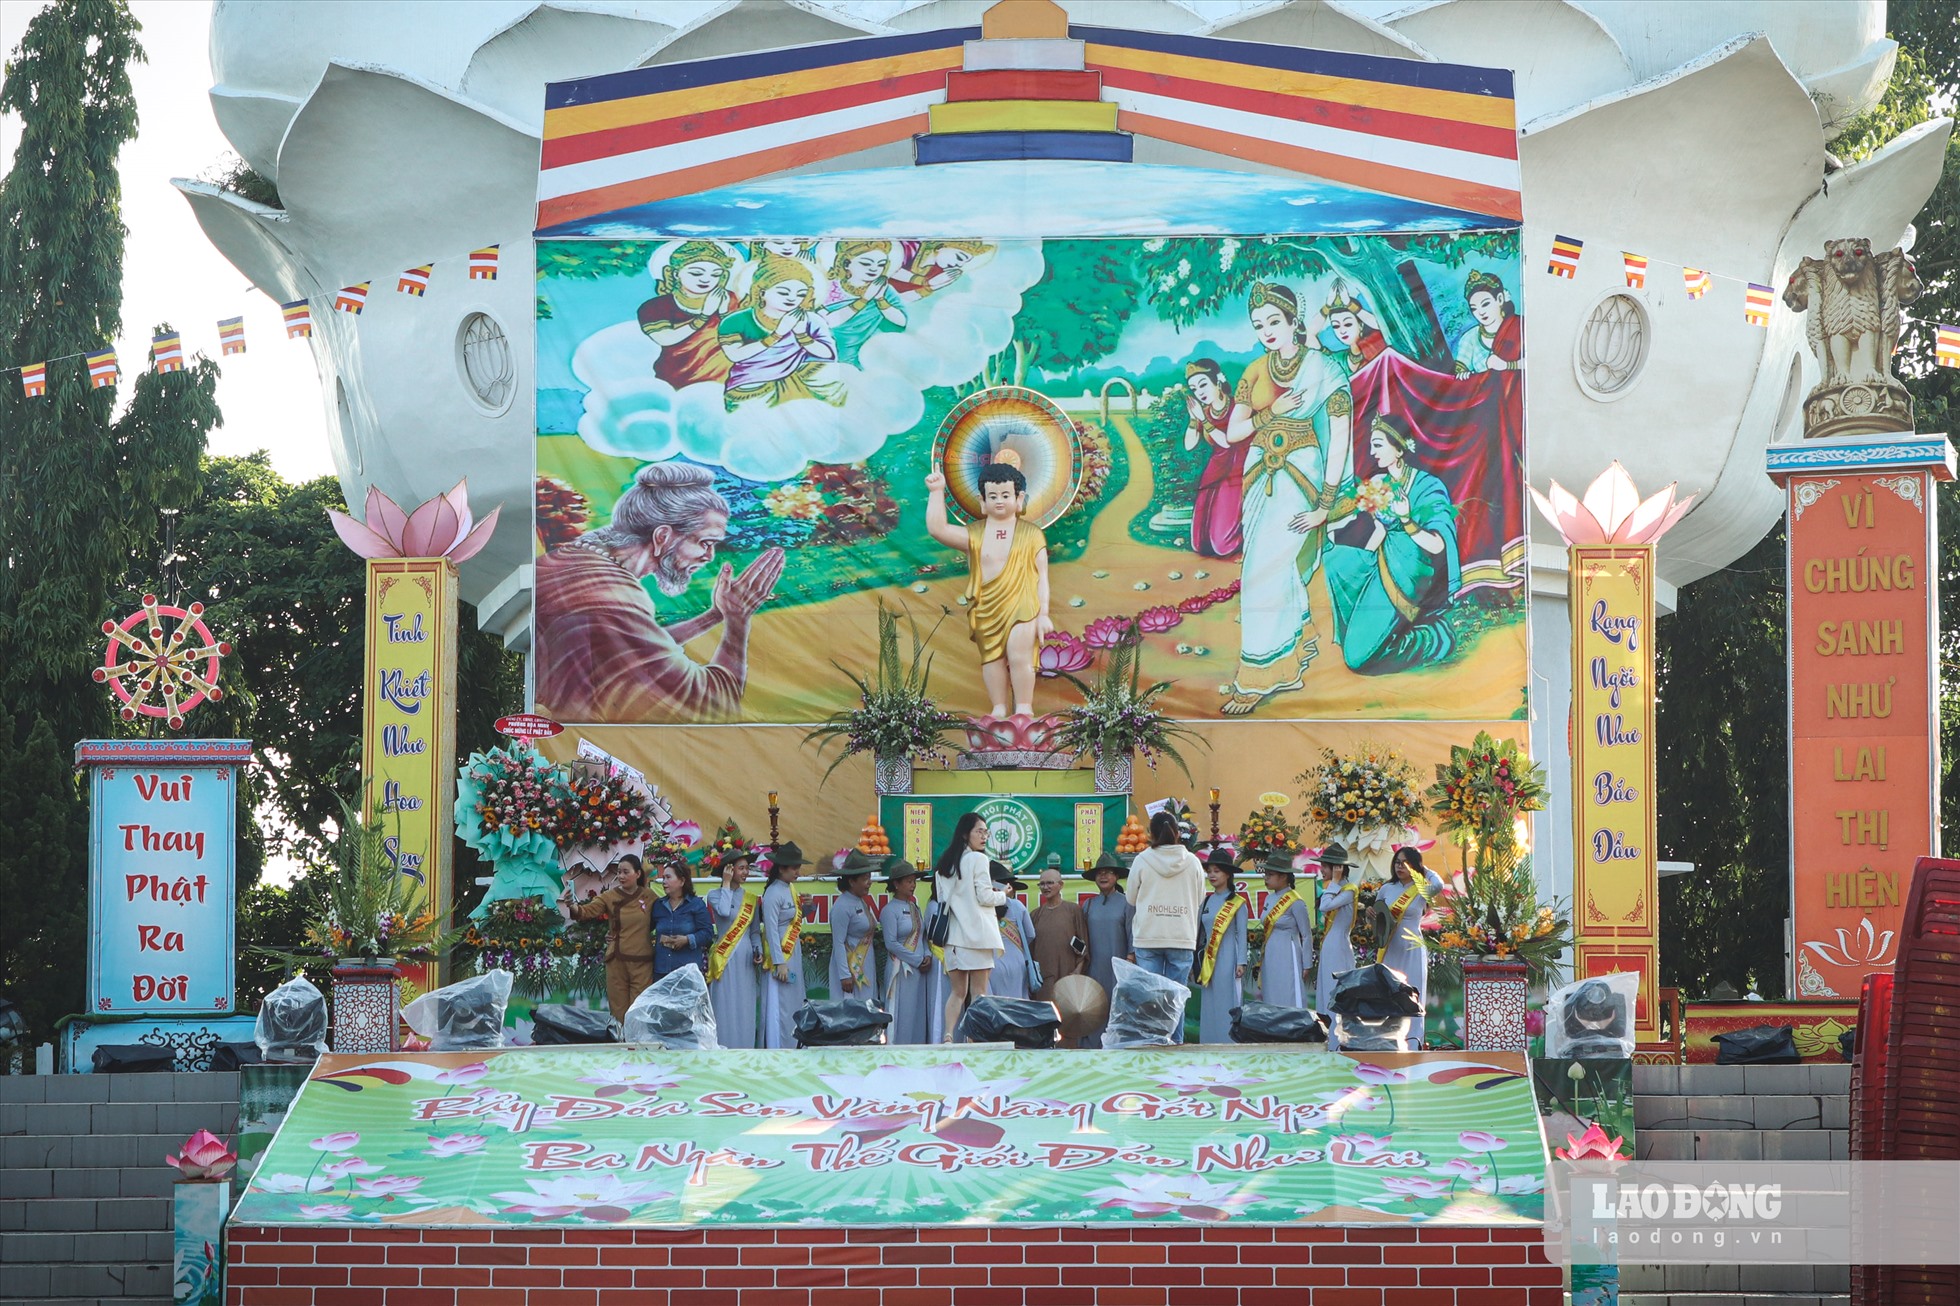 Giáo hội Phật giáo Việt Nam các cấp trên địa bàn và đồng bào Phật tử chung sức, đồng lòng cùng với nhân dân thành phố san sẻ yêu thương bằng nhiều hoạt động thiết thực.